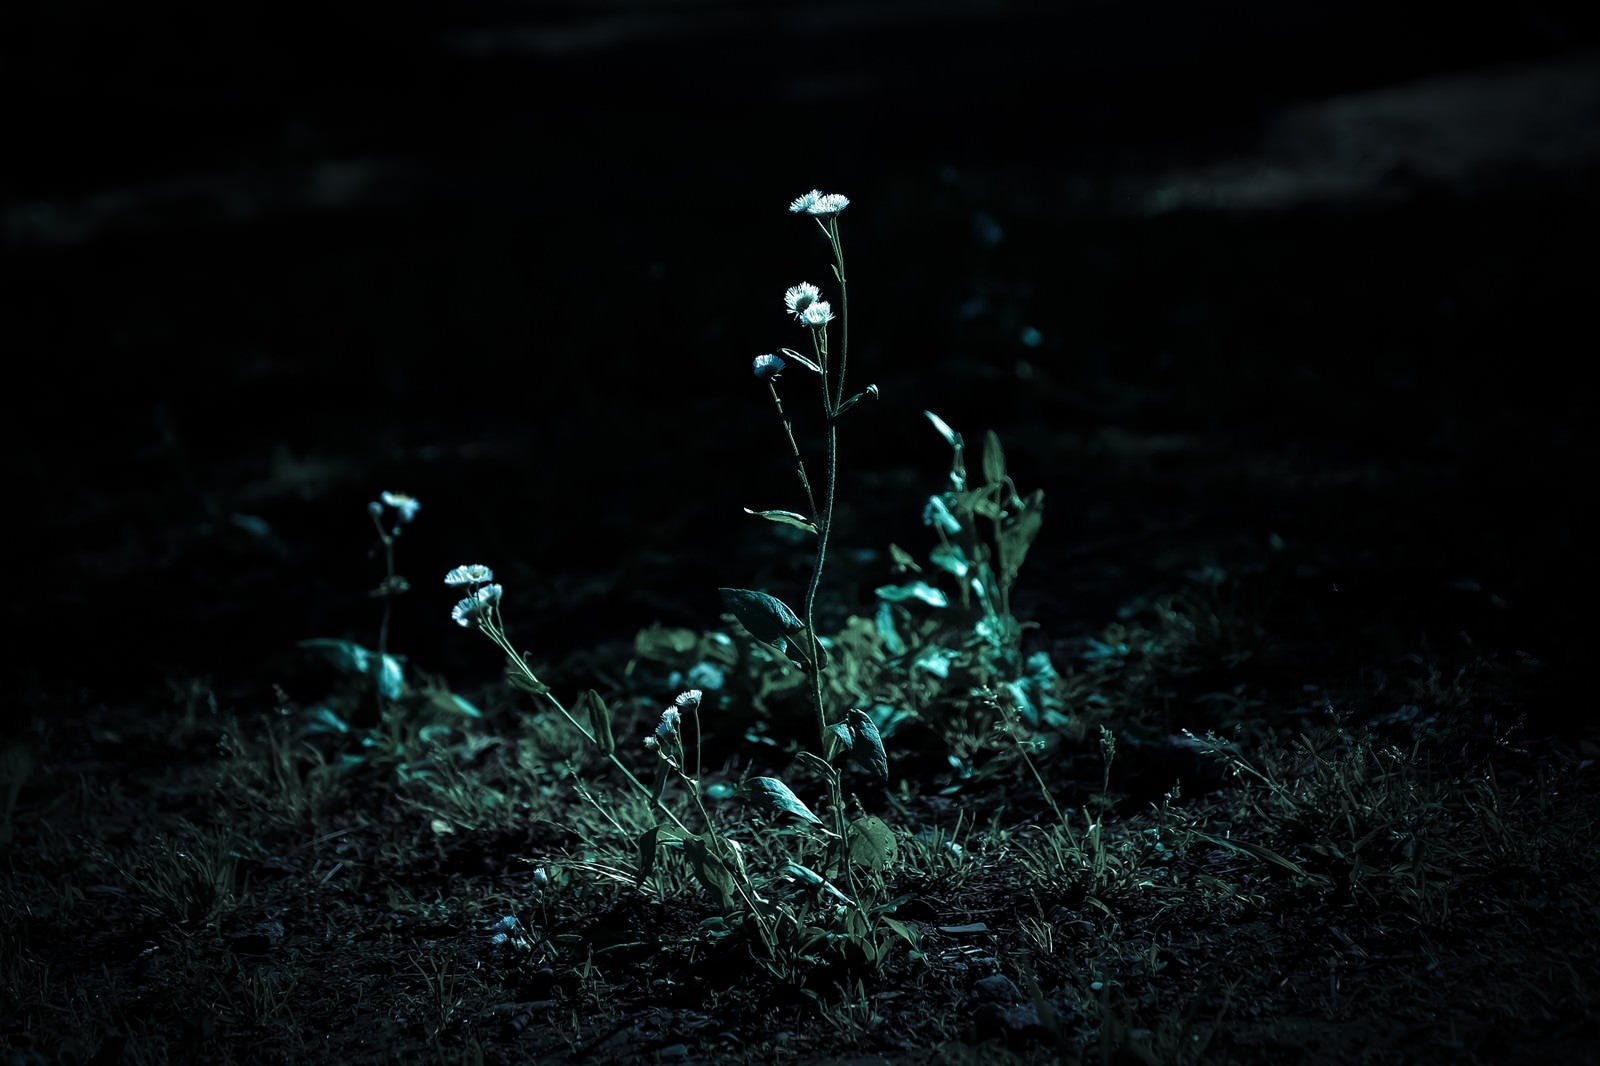 「暗闇と路肩の雑草」の写真